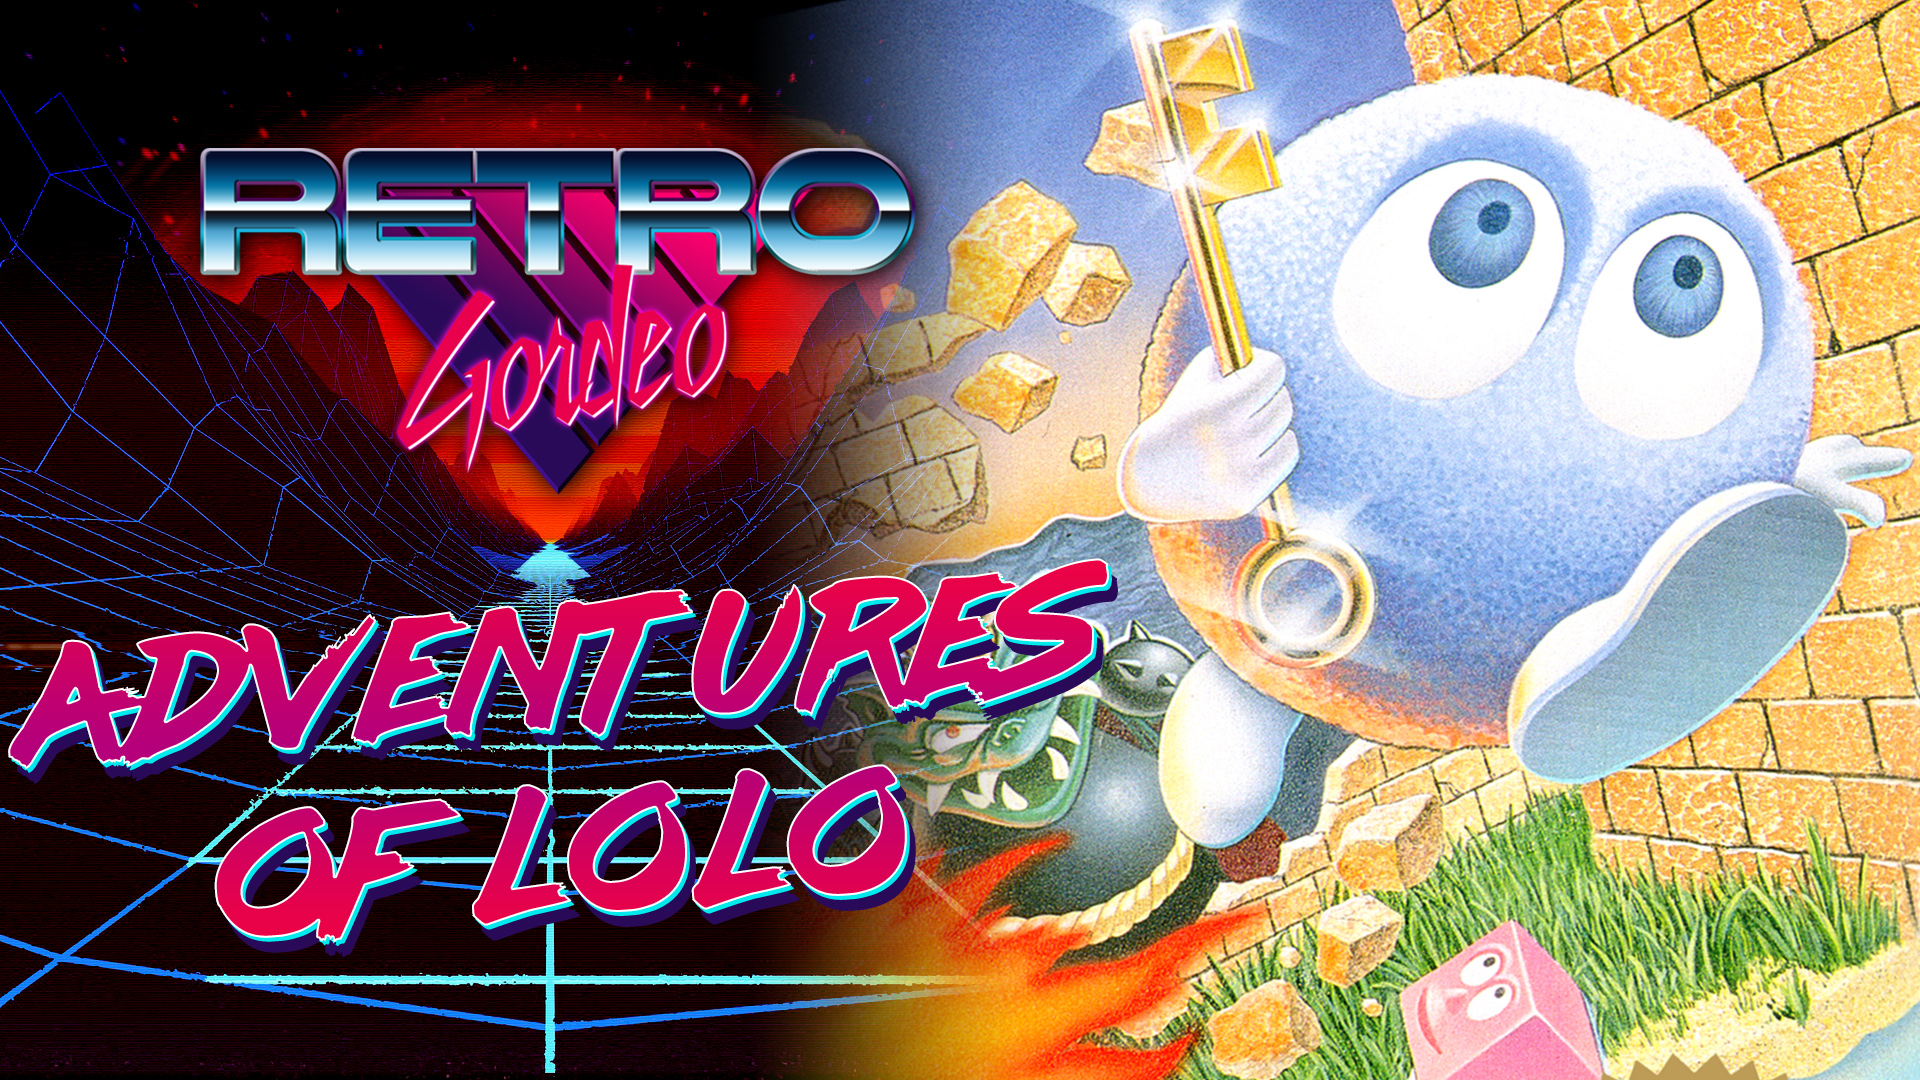 Reseña Adventures of Lolo, Retro Gordeo